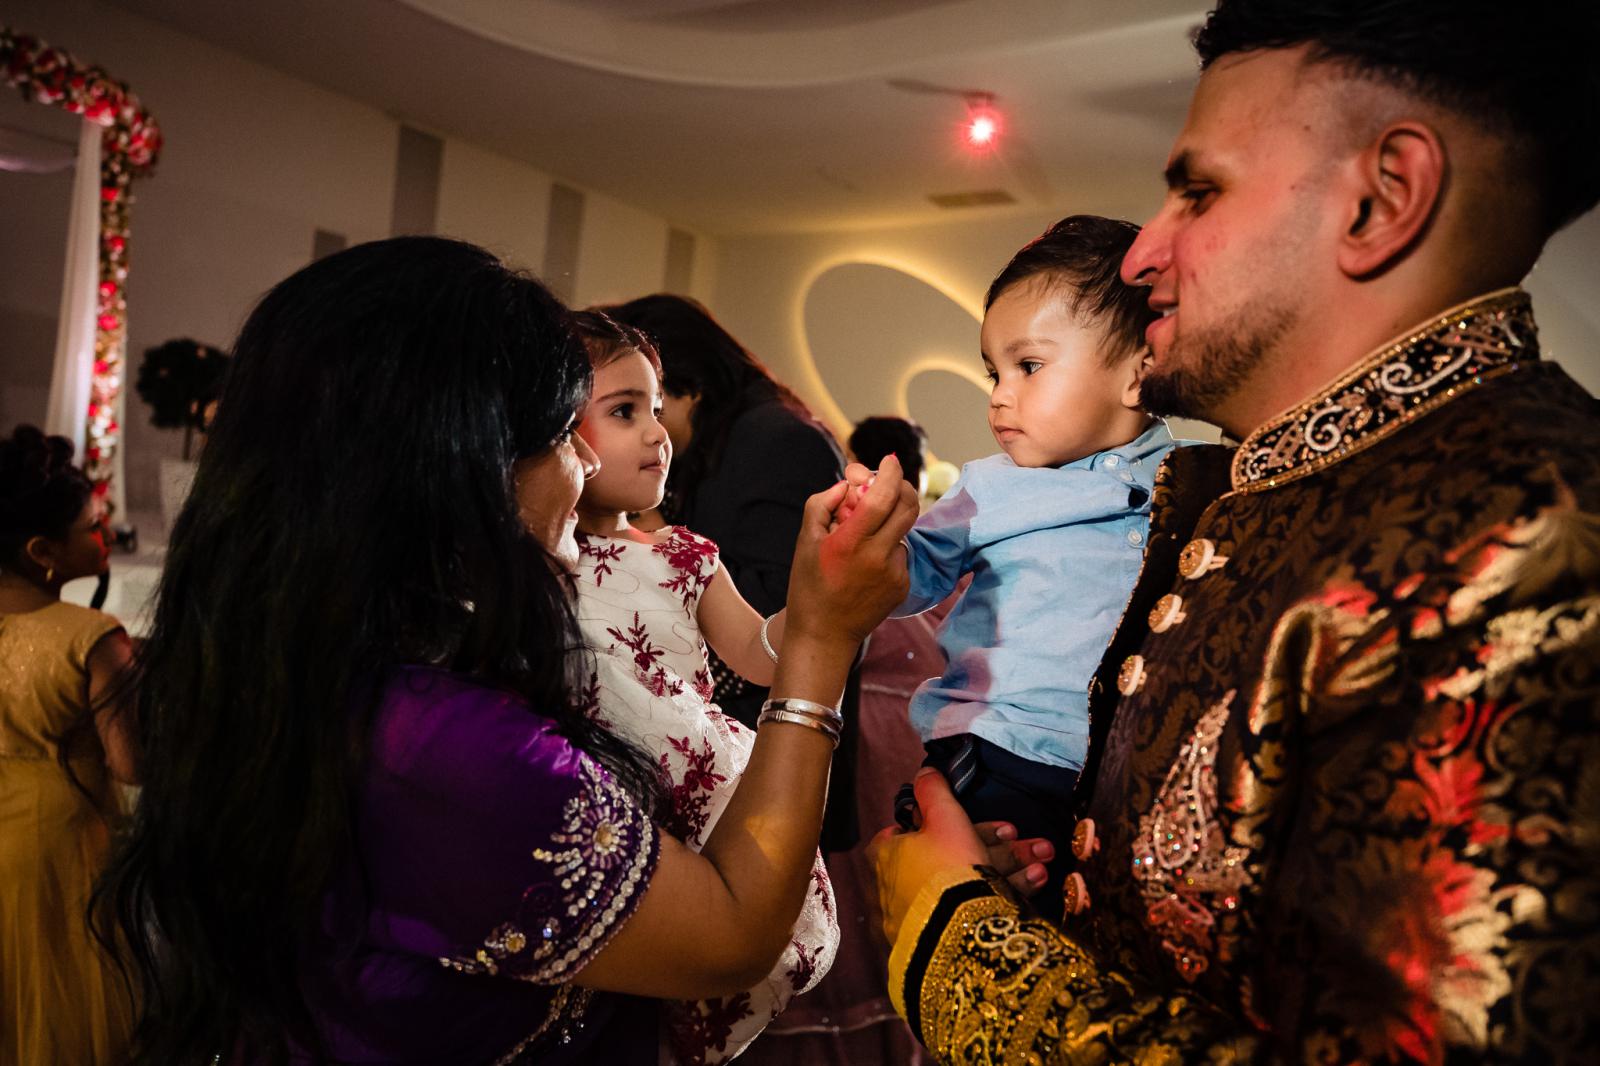 Hindoestaanse kindjes op trouwfeest door trouwfotograaf rey events almere